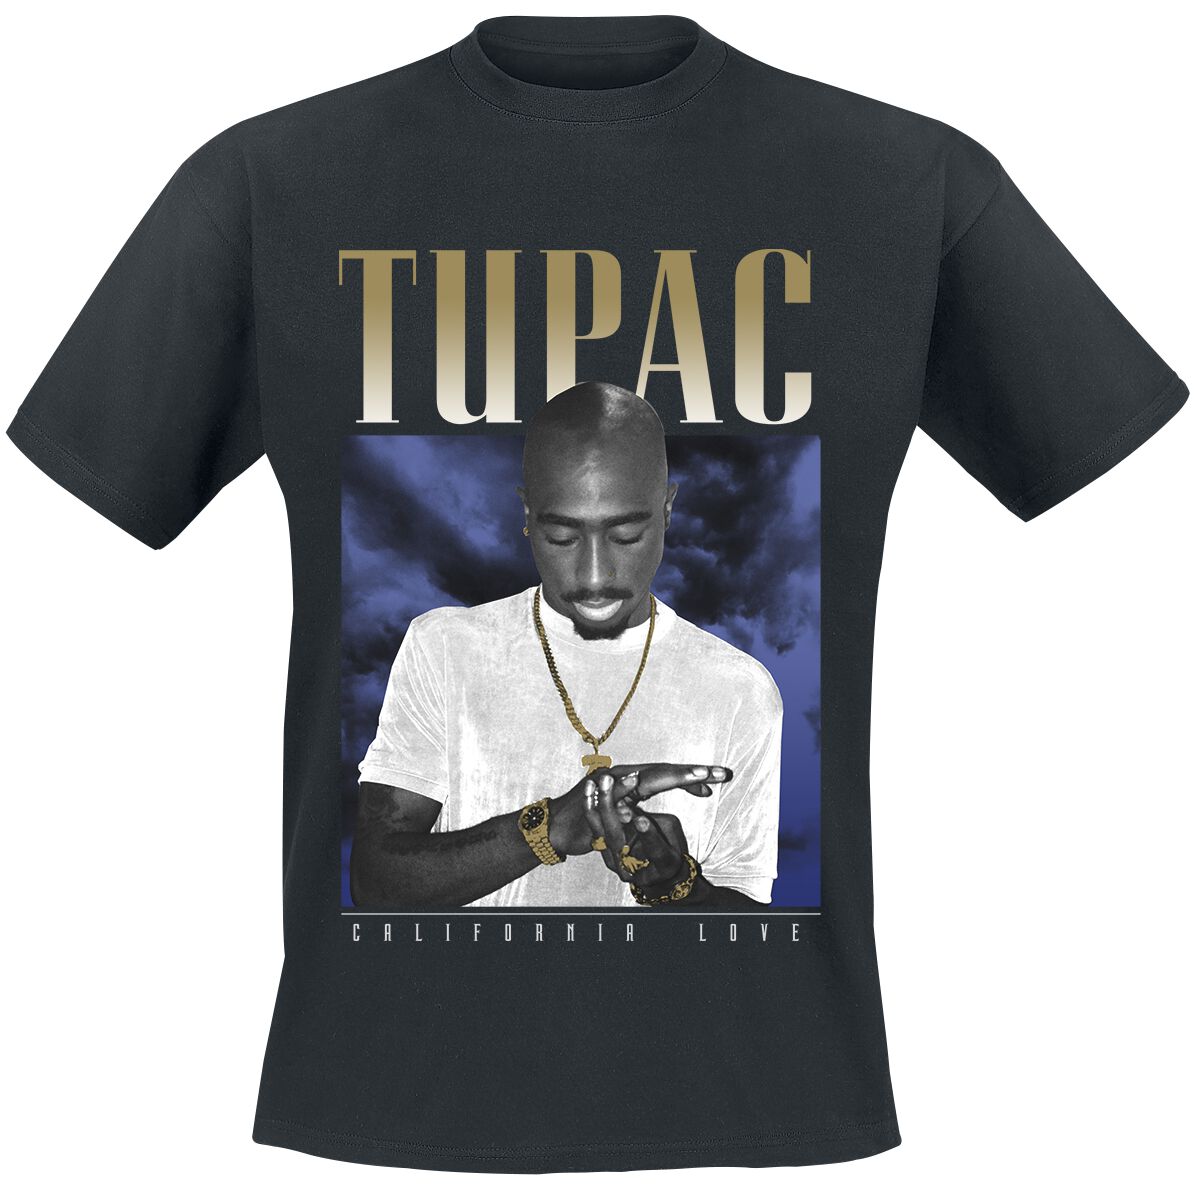 Tupac Shakur T-Shirt - California Love Clouds - S bis XXL - für Männer - Größe M - schwarz  - Lizenziertes Merchandise!